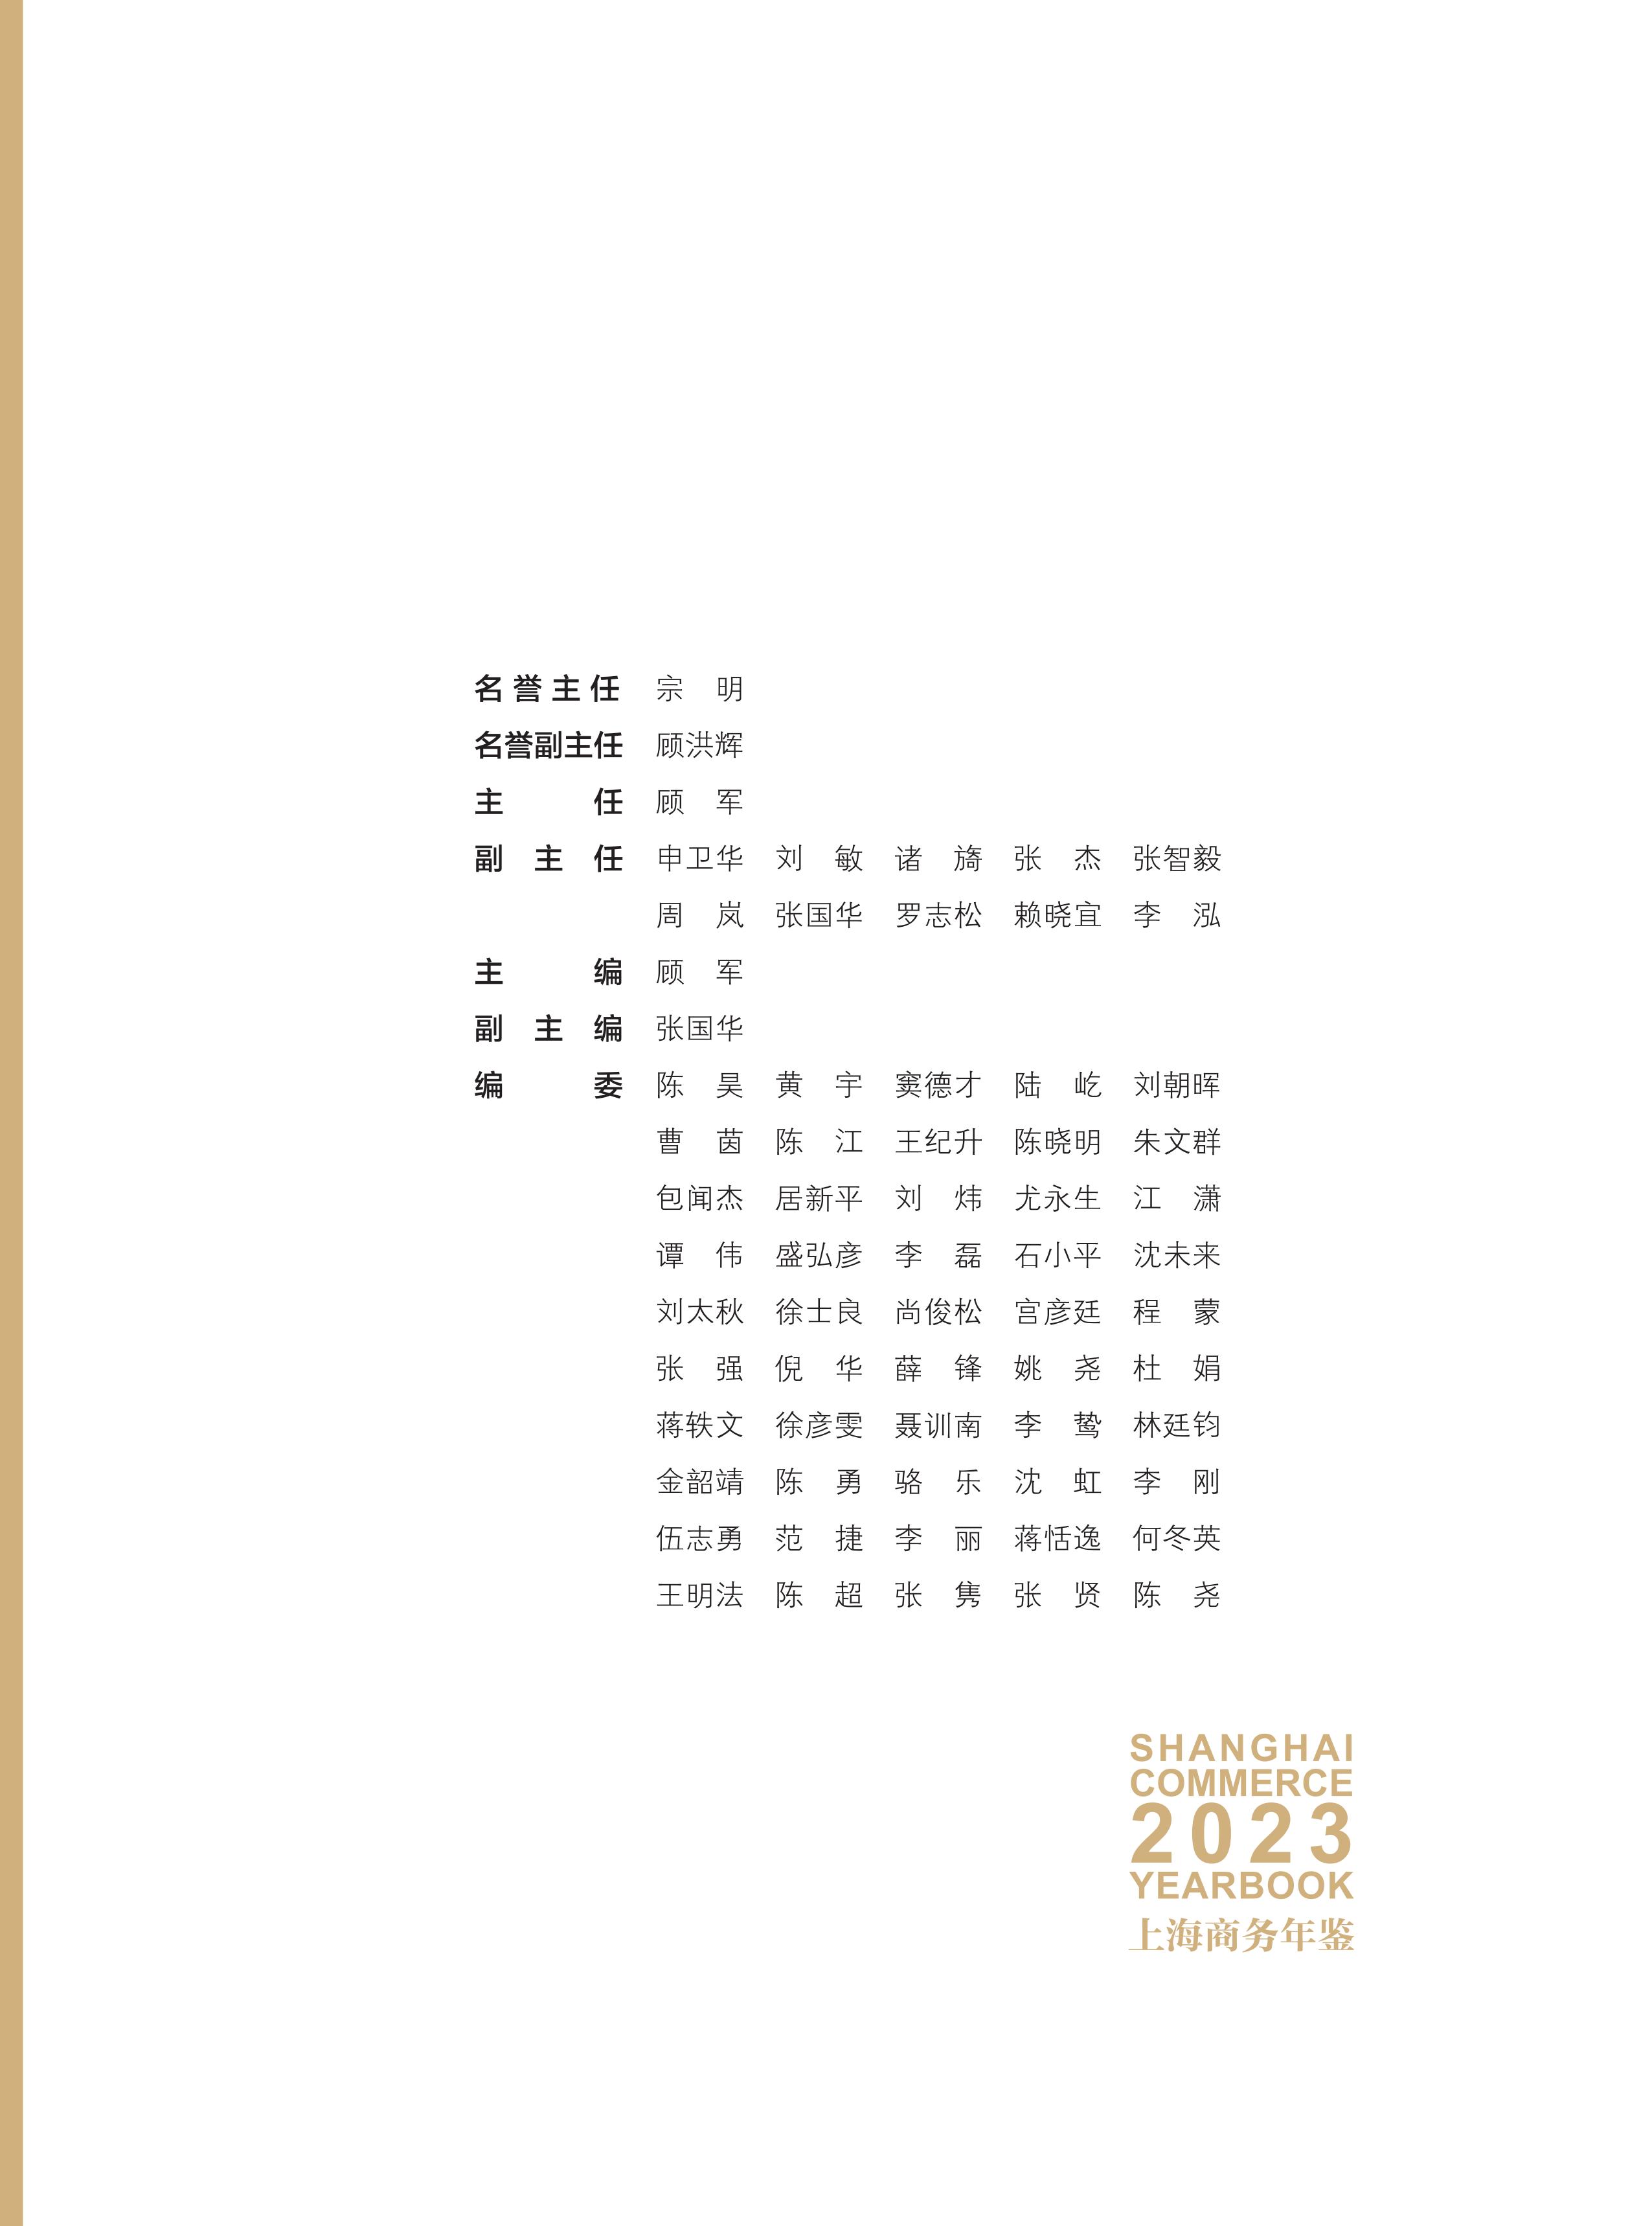 前彩页-商务年鉴2023_03.jpg